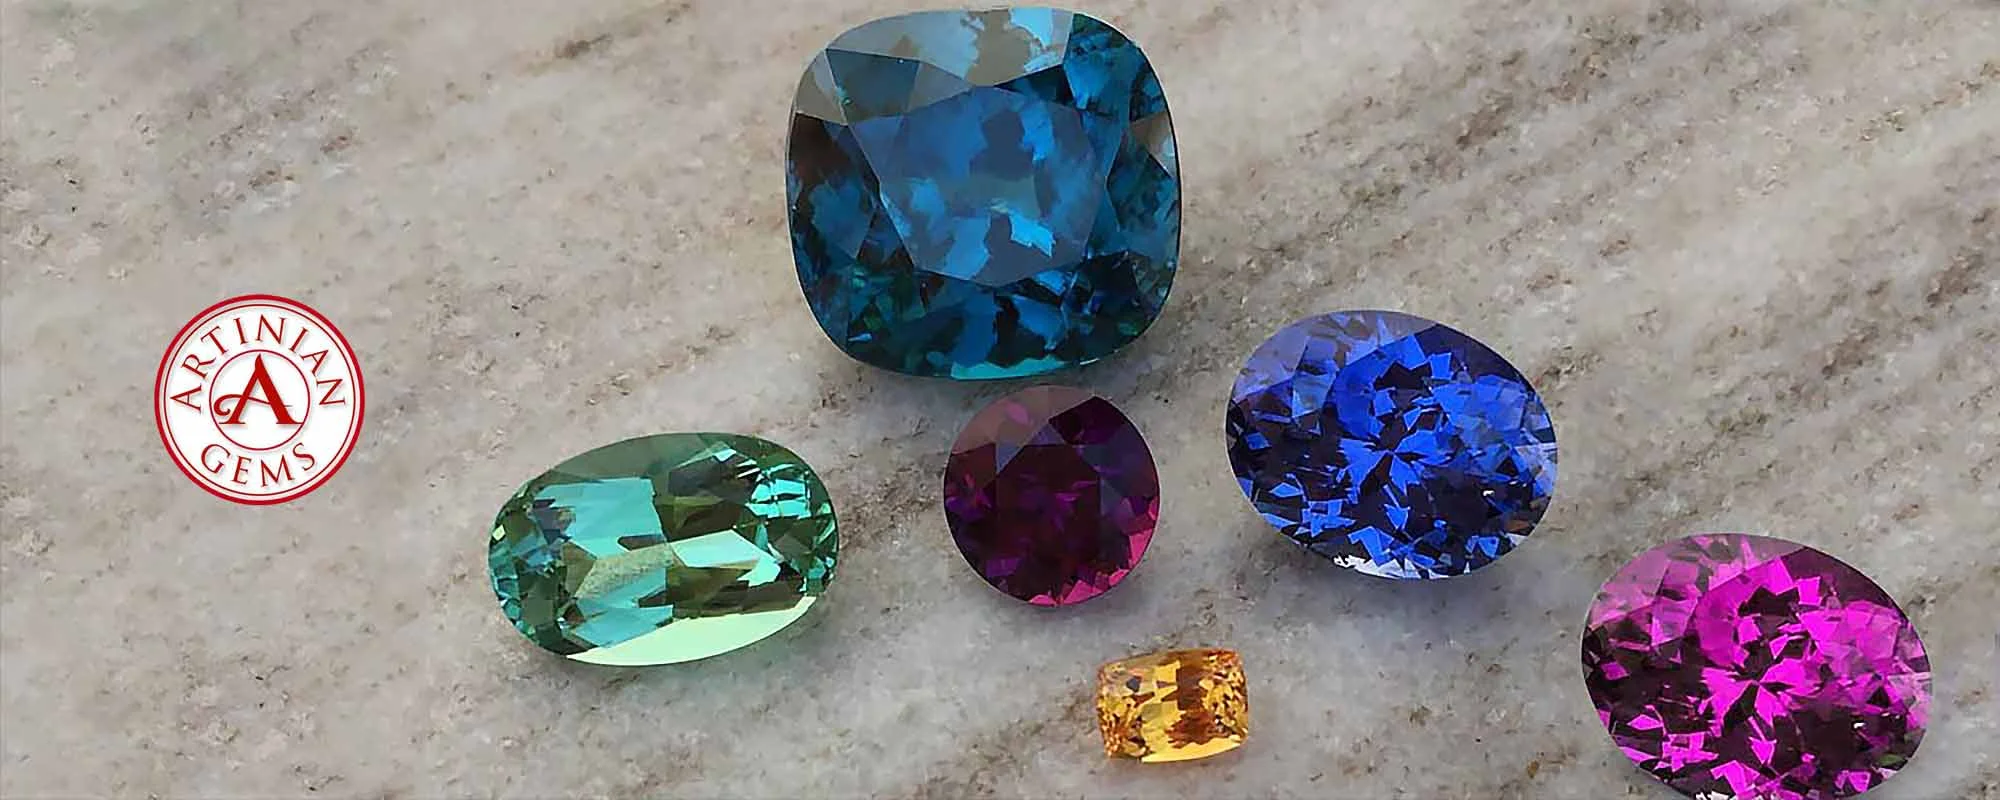 Artinian Gemstone At Leighton^s Jewelers